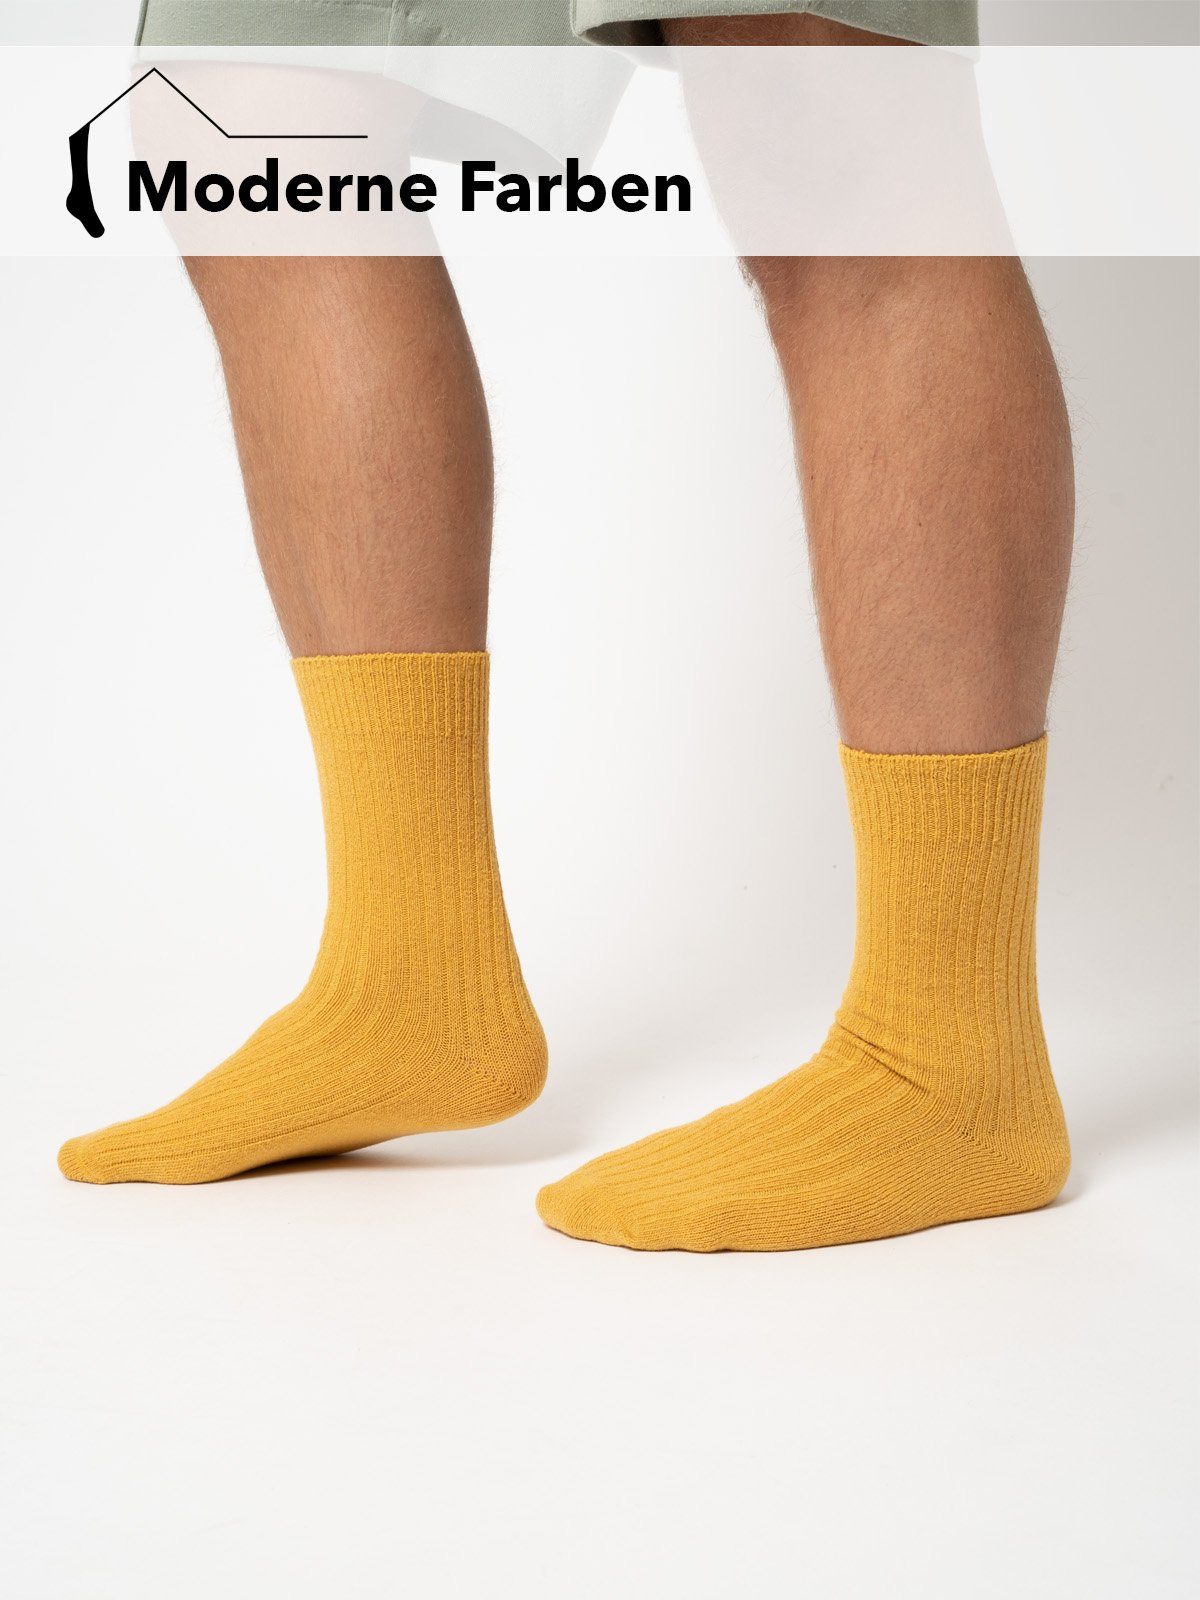 HomeOfSocks Socken Druckarm Wollanteil 72% Hochwertige Wollsocken Dünne Bunt Uni Schwarz Dünn Bunte mit Wollsocken